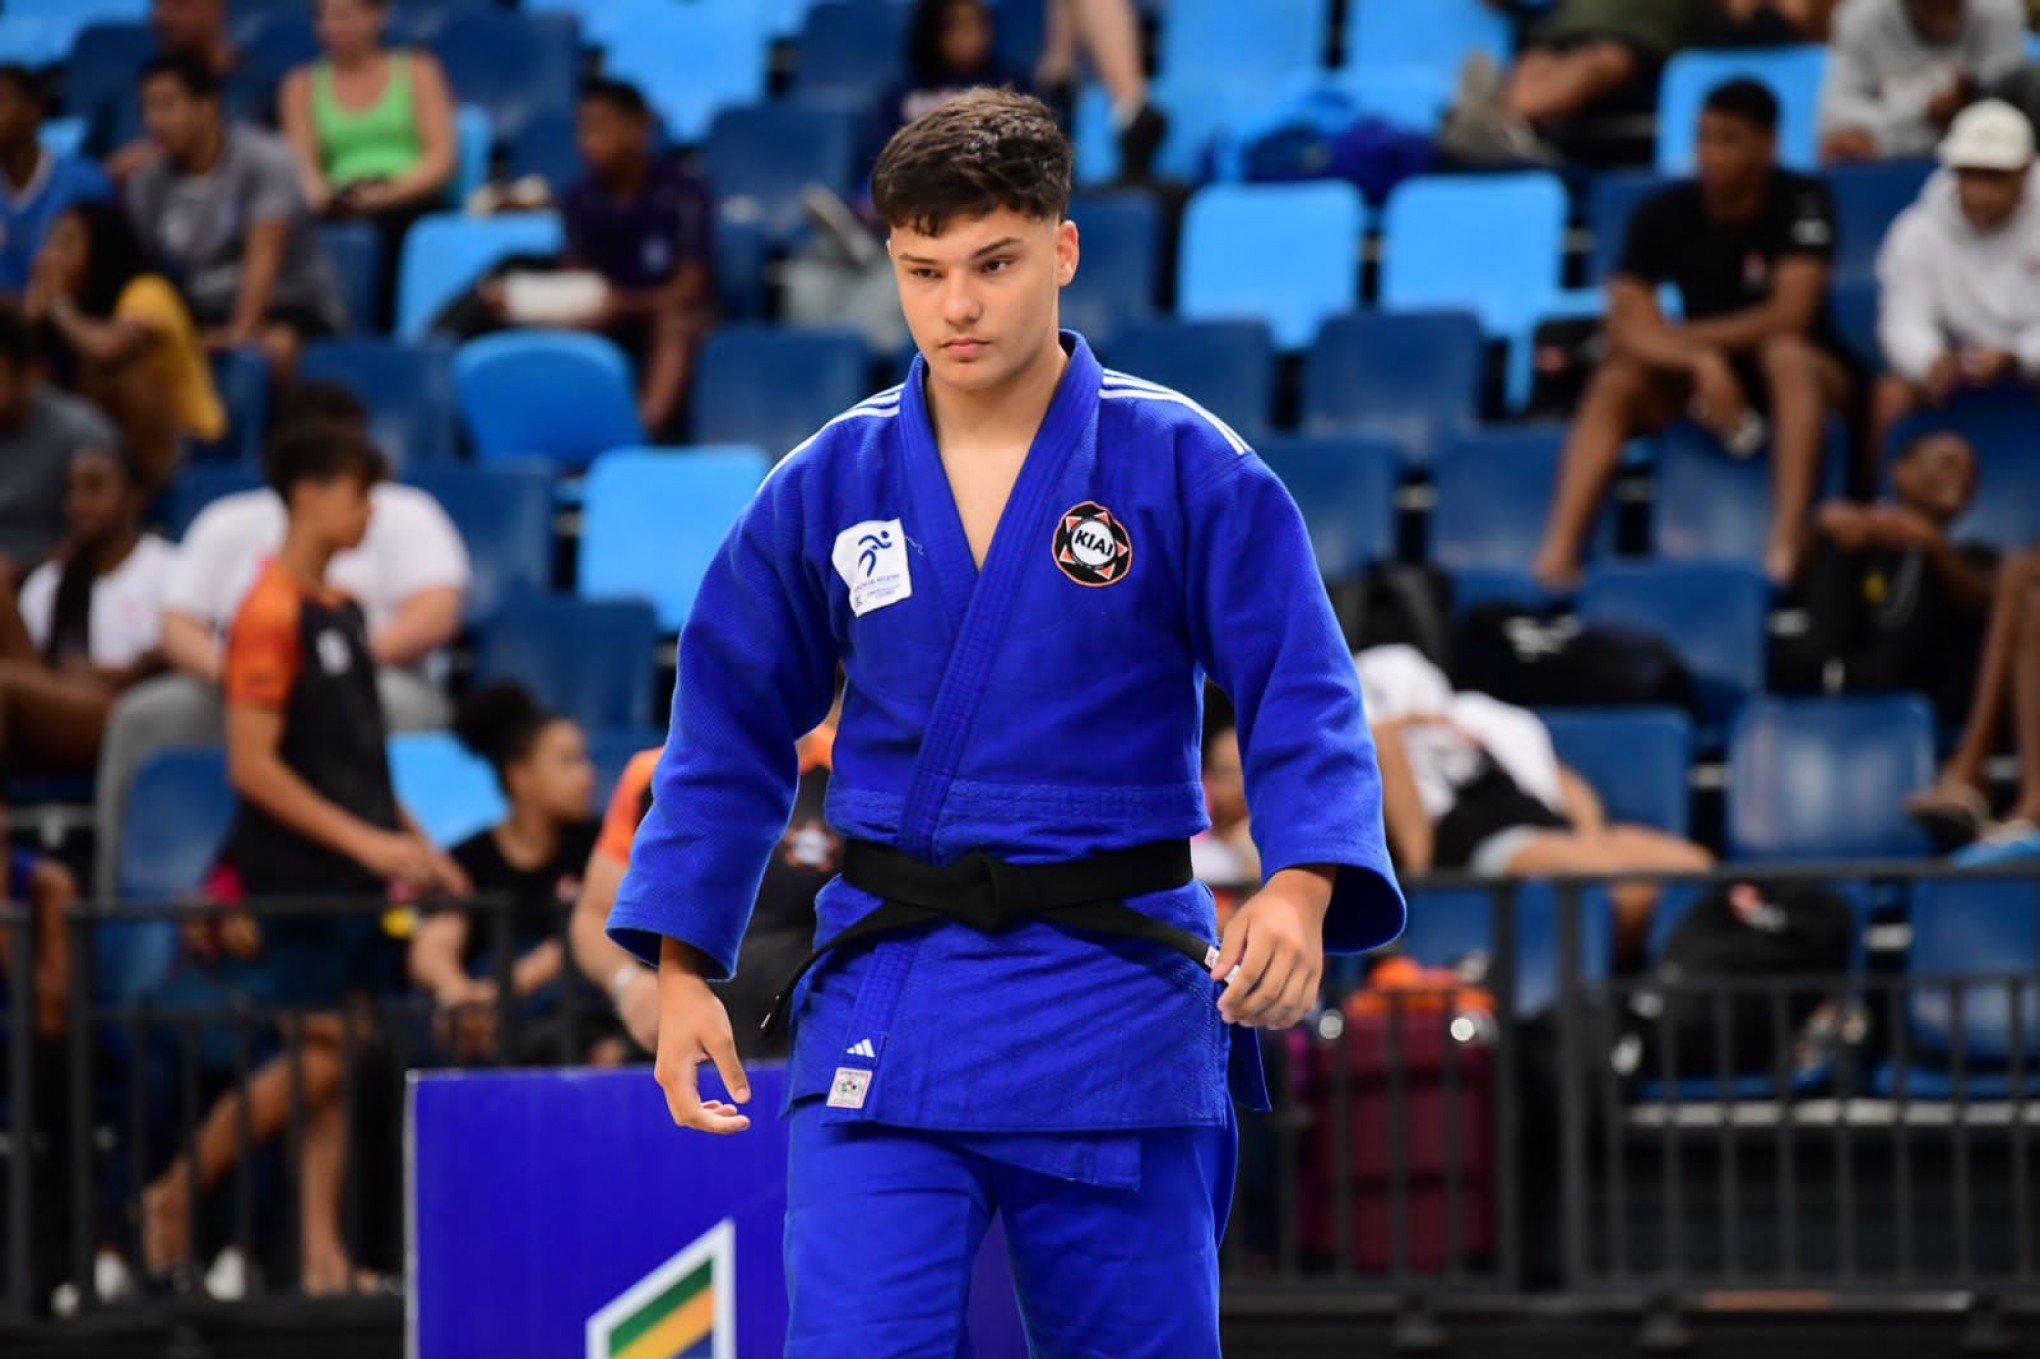 Judoca de Novo Hamburgo busca ajuda para representar a Seleção Brasileira na Croácia